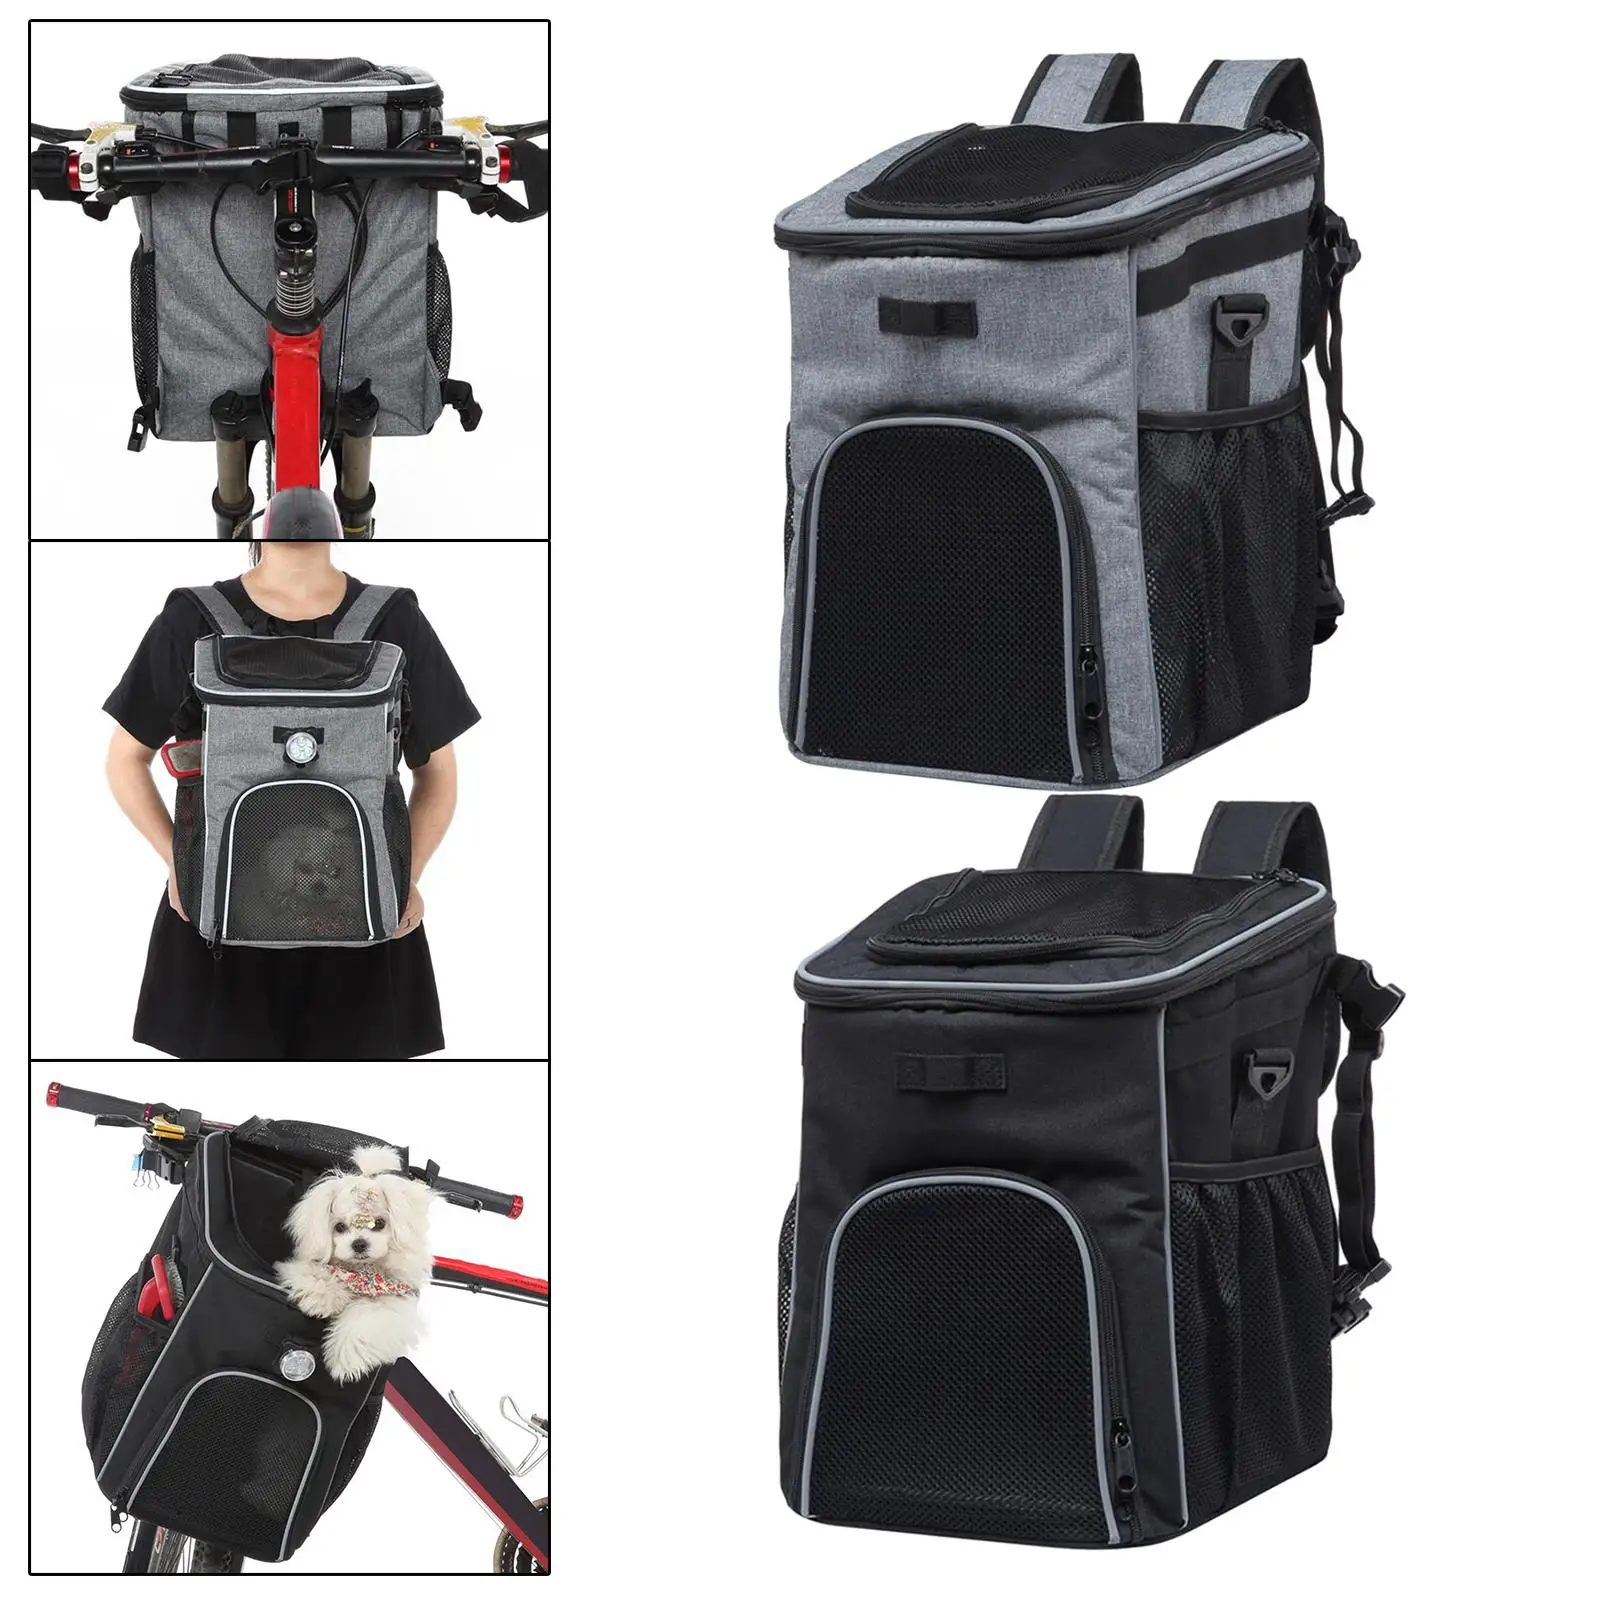 Dog Bike Basket Bag Breathable Dog Backpack Carrier Removable Lightweight Knapsack Pet Travel Bag for Bike Riding Walking